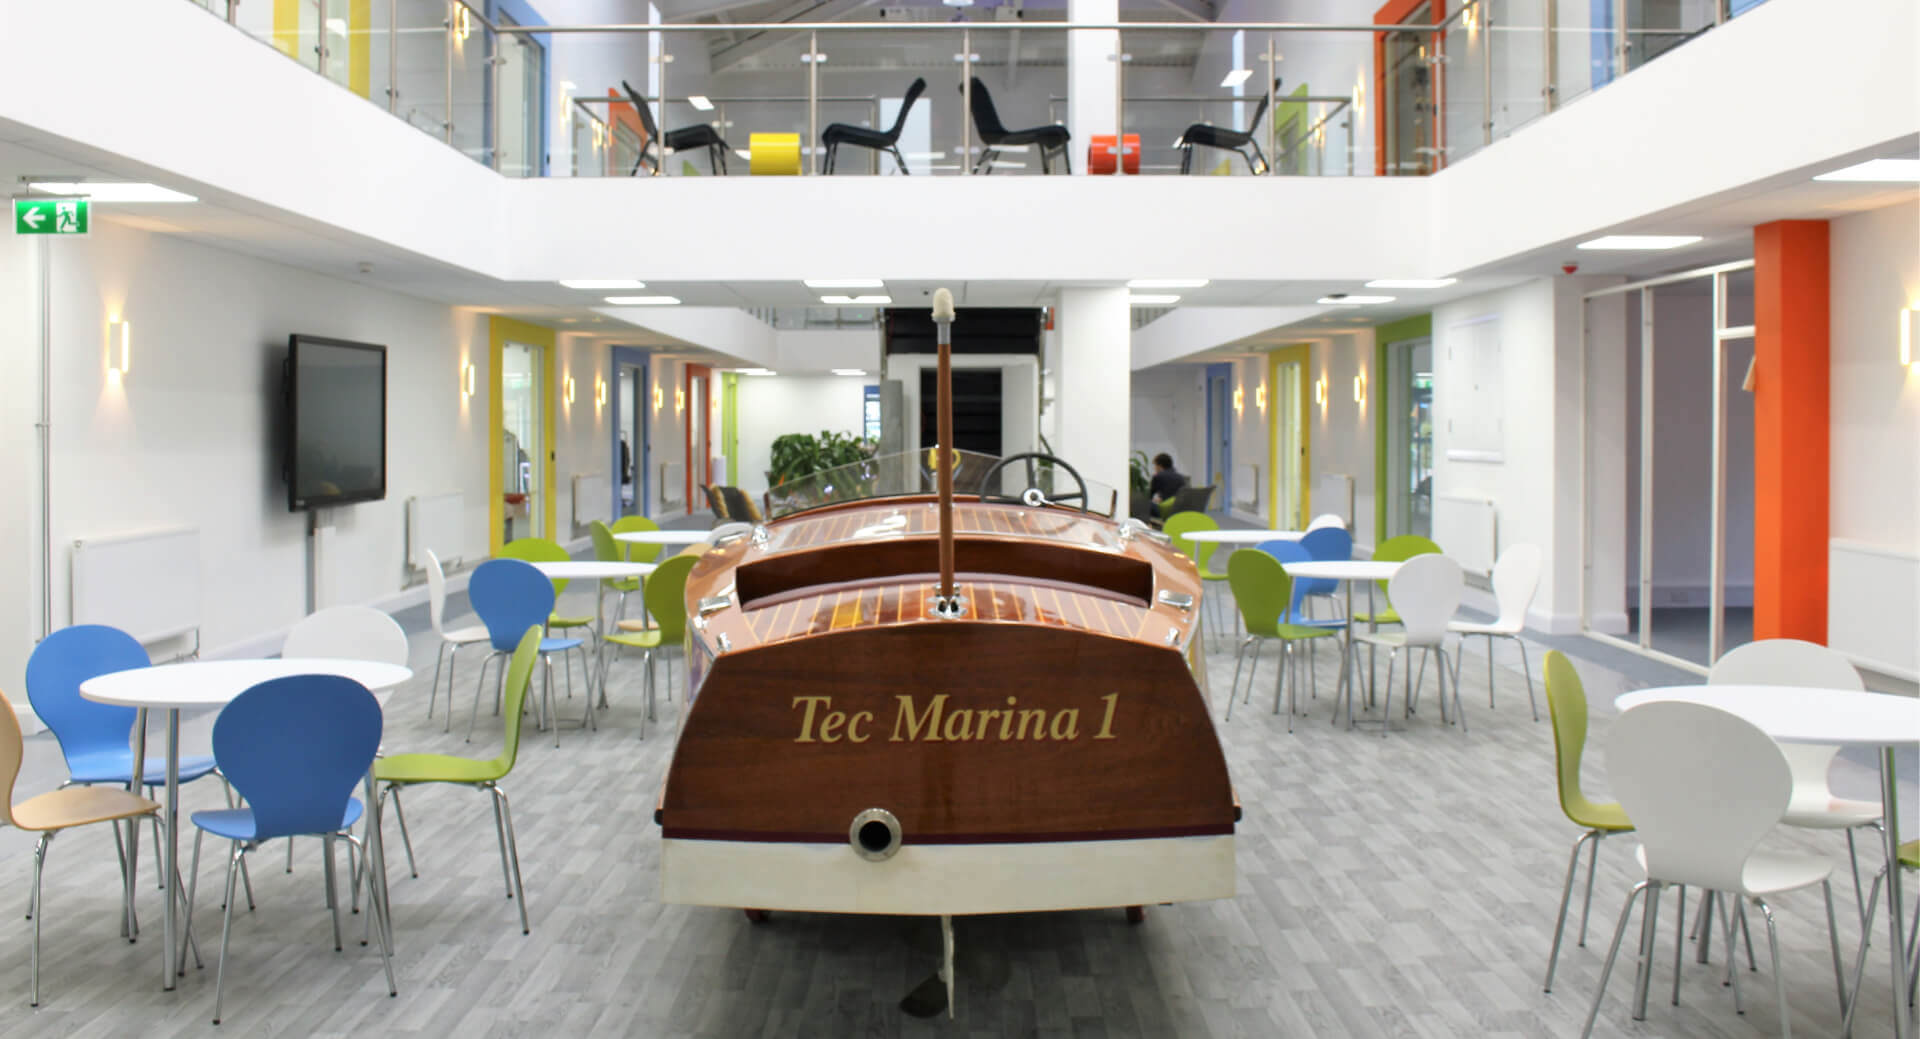 Tec Marina Boat